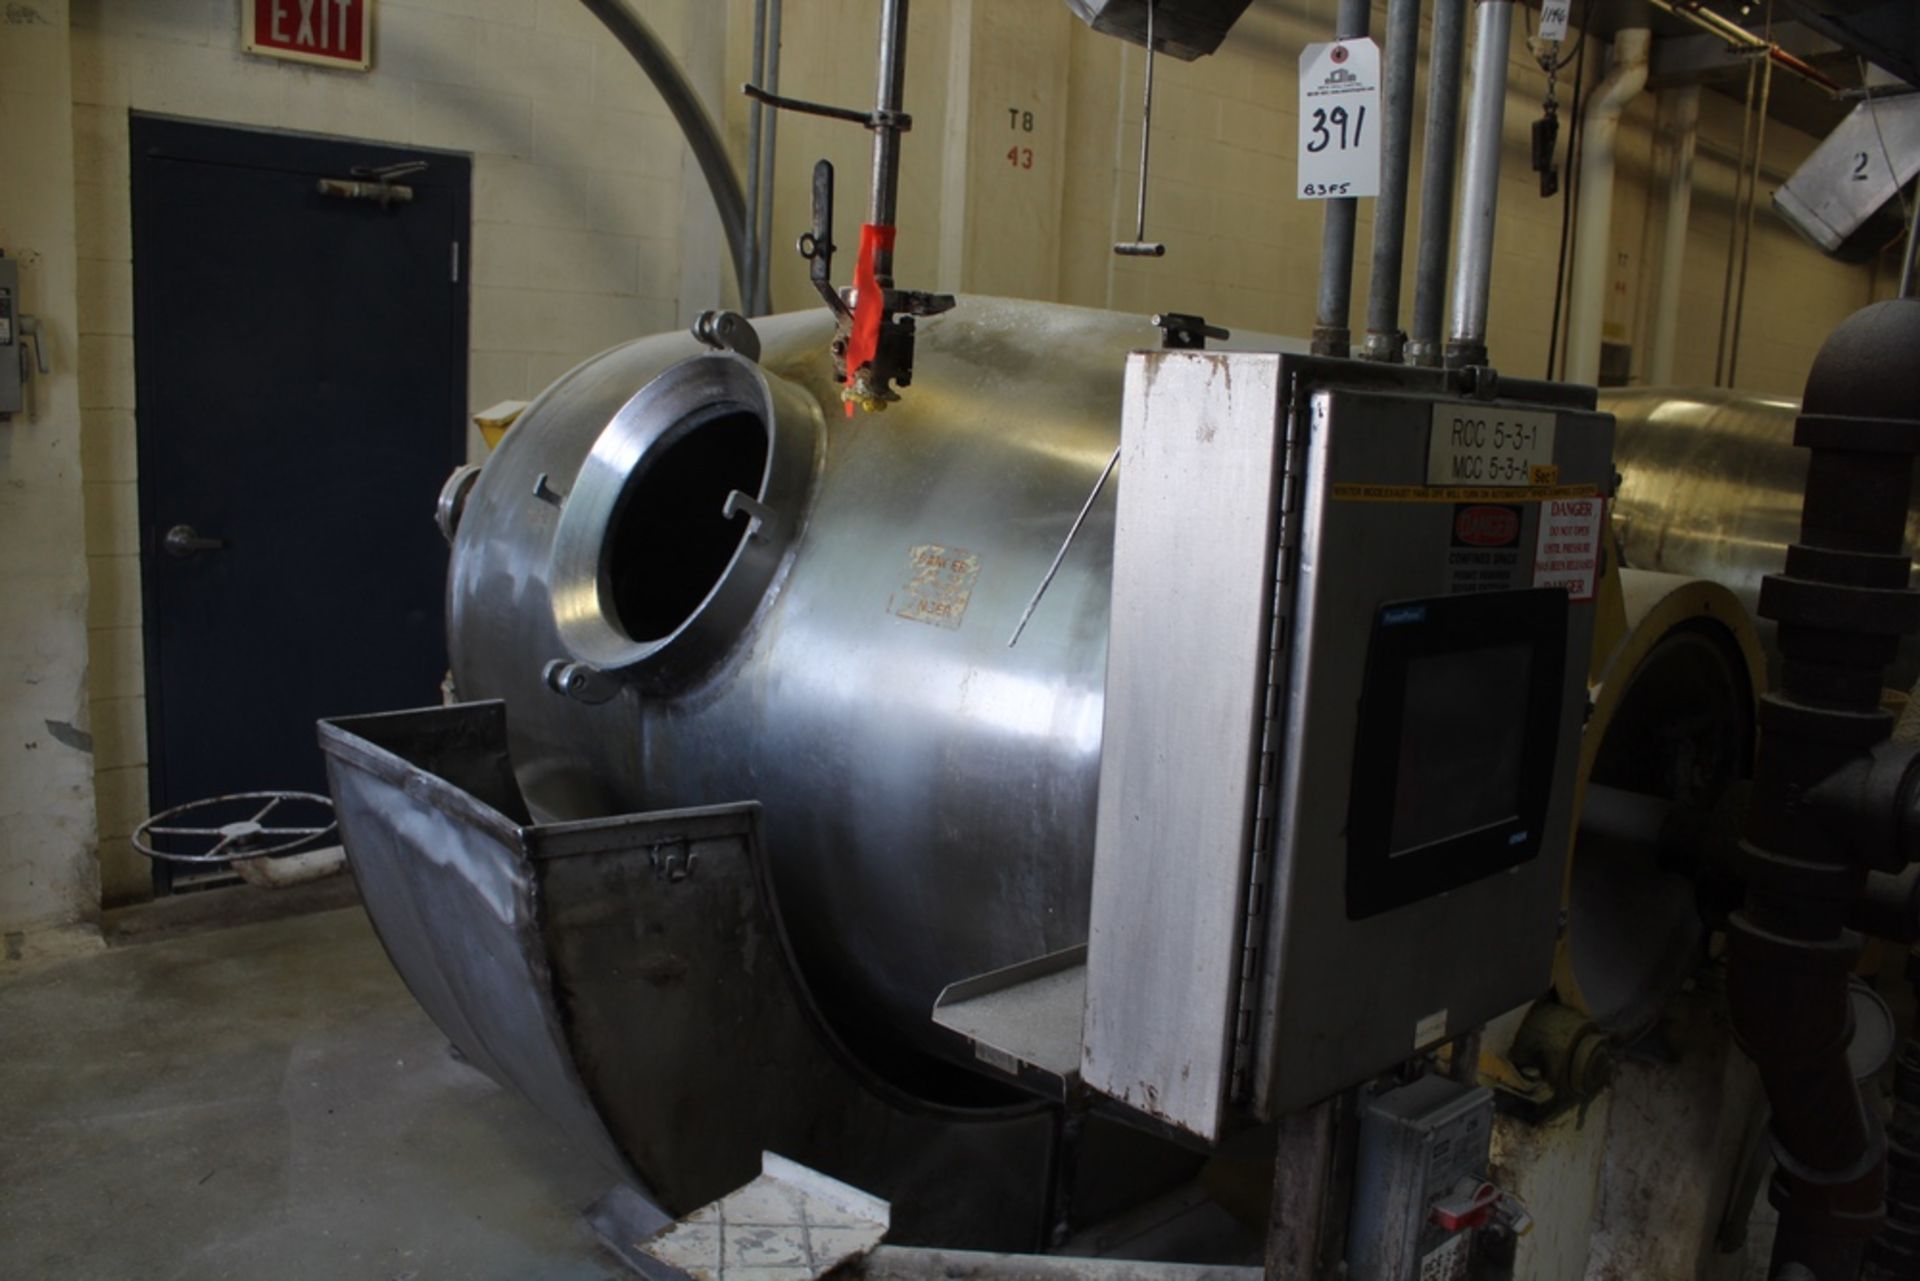 Hamilton 565 Gallon Rotary Steam Pressure Cooker | Rig Fee: $1200